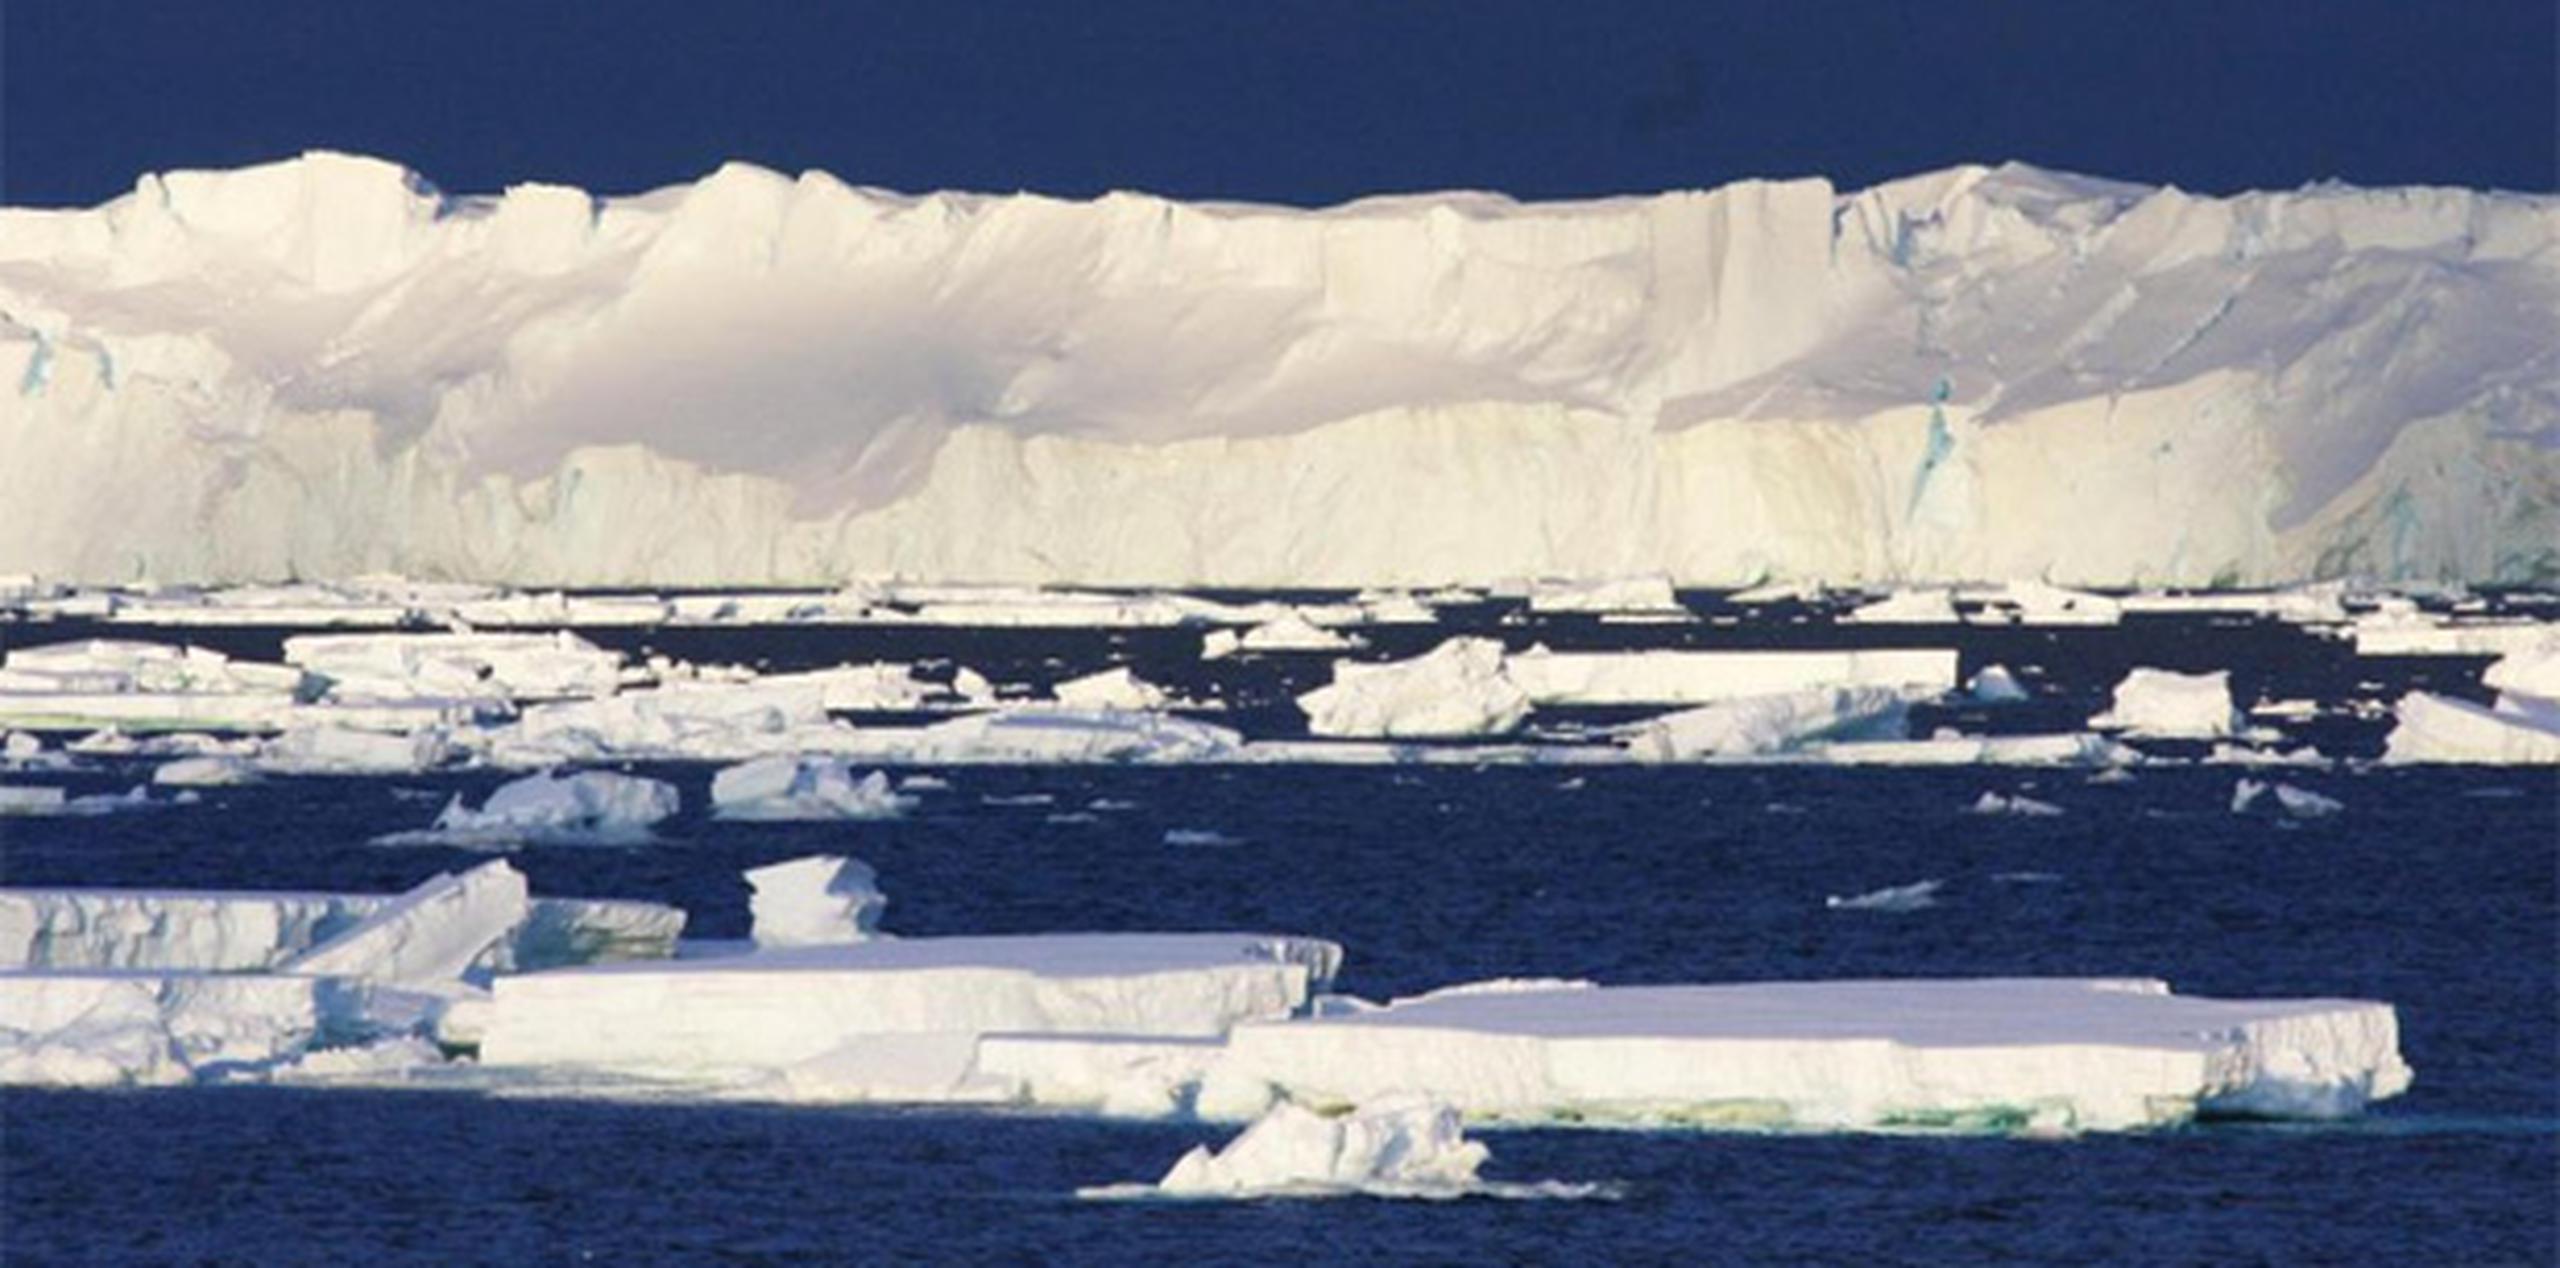 La medición exacta de la pérdida de hielo corresponde a unos pocos cientos de glaciares, pero los mismos resultados cualitativos pueden aplicarse a decenas de miles de glaciares del mundo. (AFP)